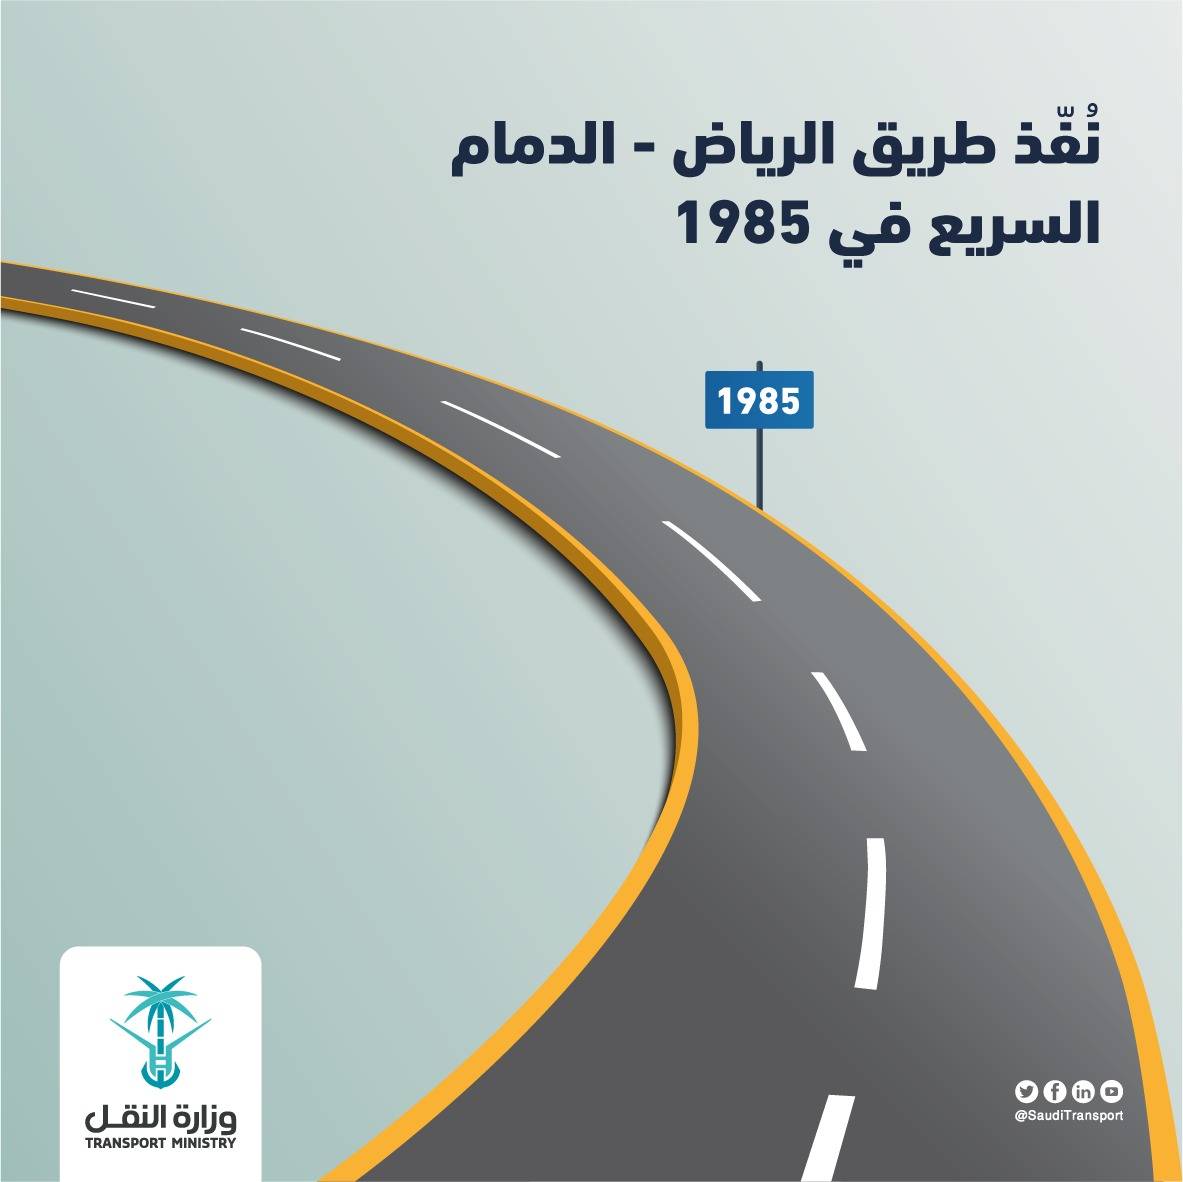 وزارة النقل Ar Twitter تم تنفيذ طريق الرياض الدمام السريع في عام 1985 معلومة نقل